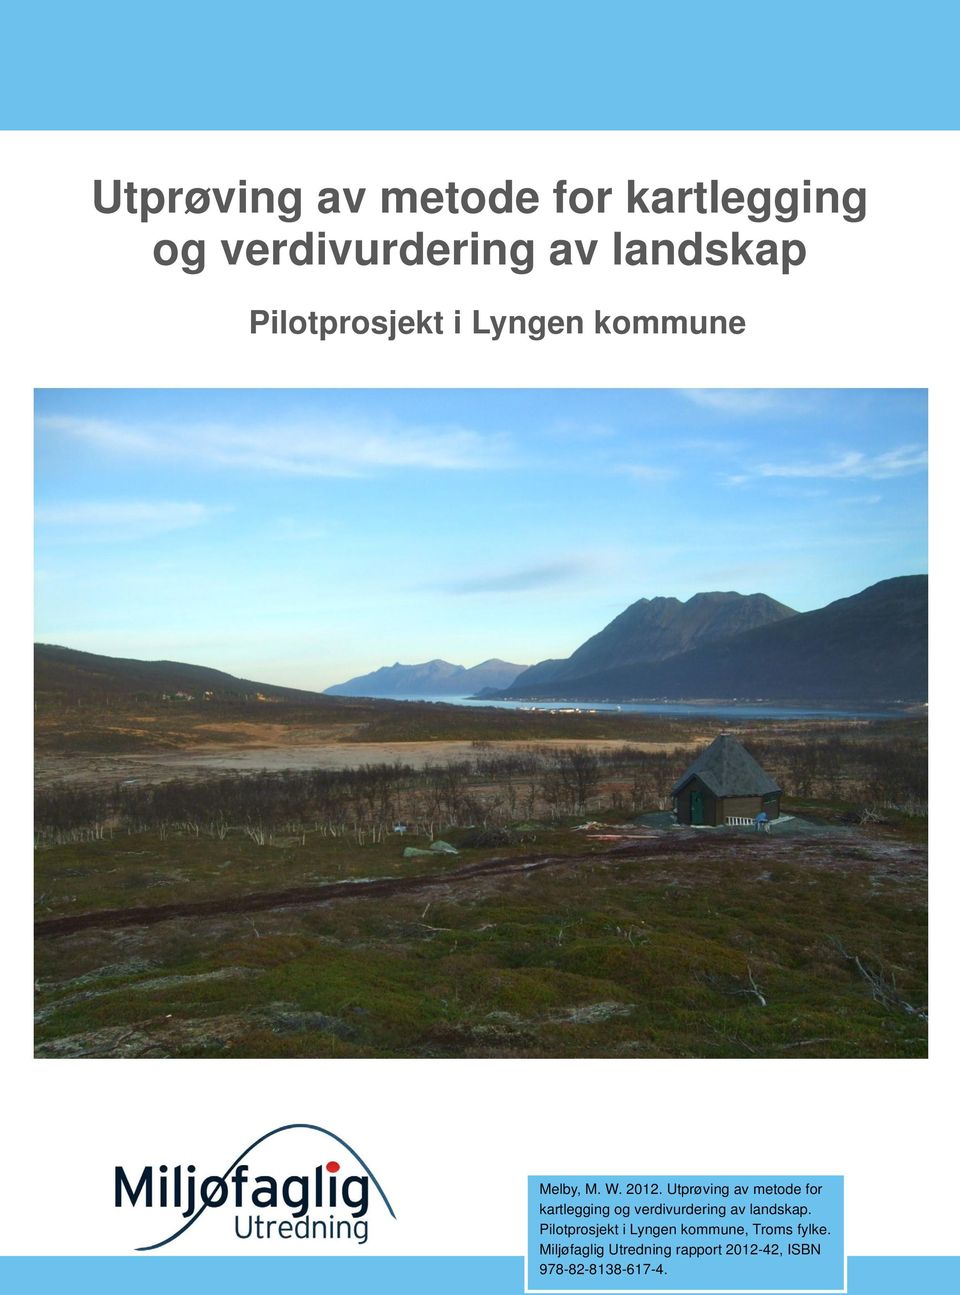 Melby Melby, M. W. 2012. Utprøving av metode for kartlegging og verdivurdering av landskap.